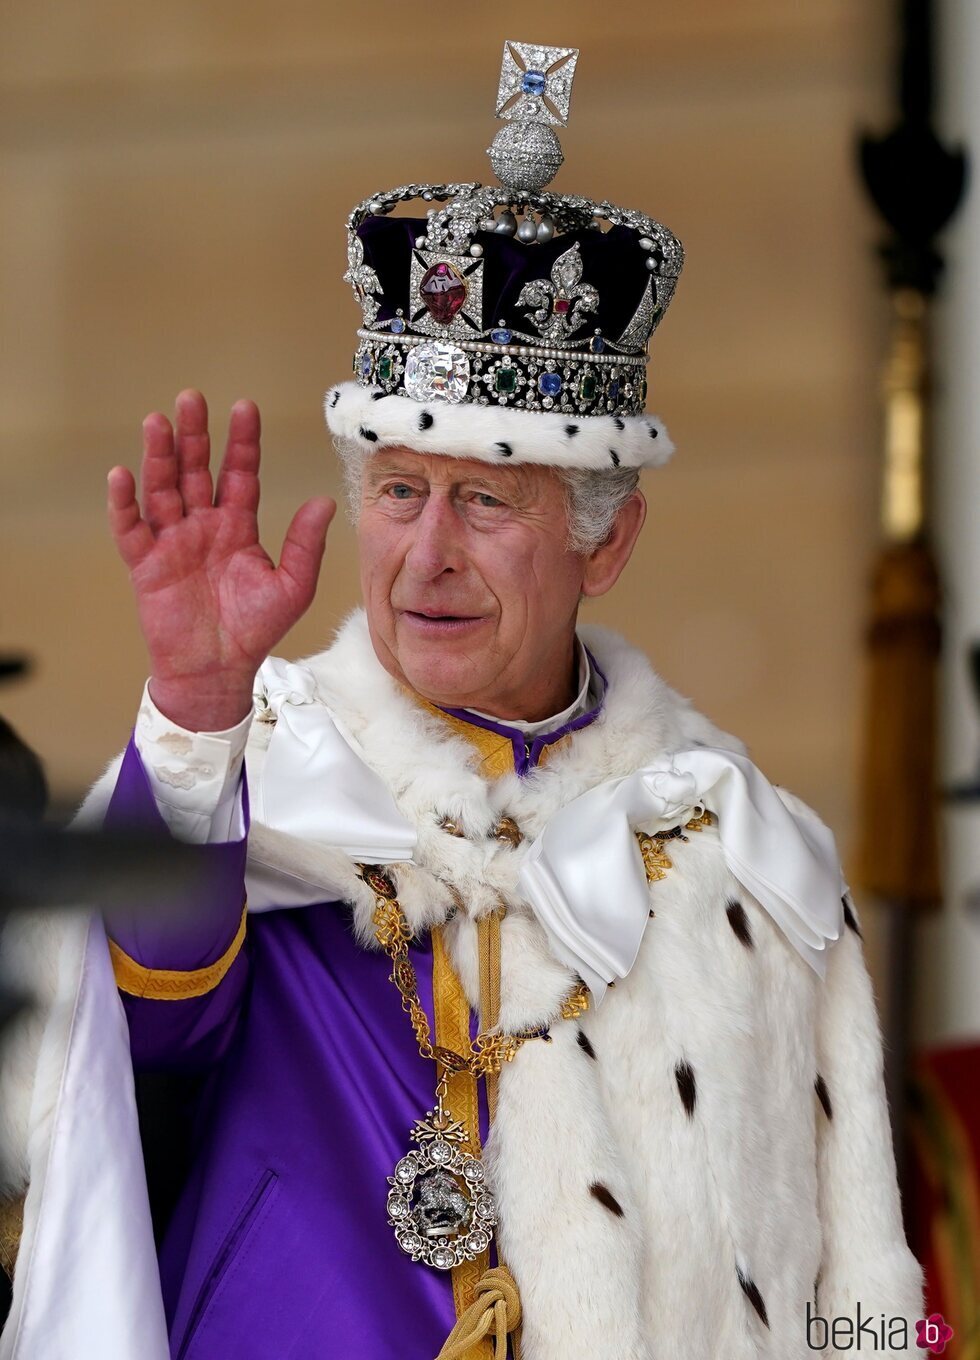 El Rey Carlos III saludando tras ser coronado